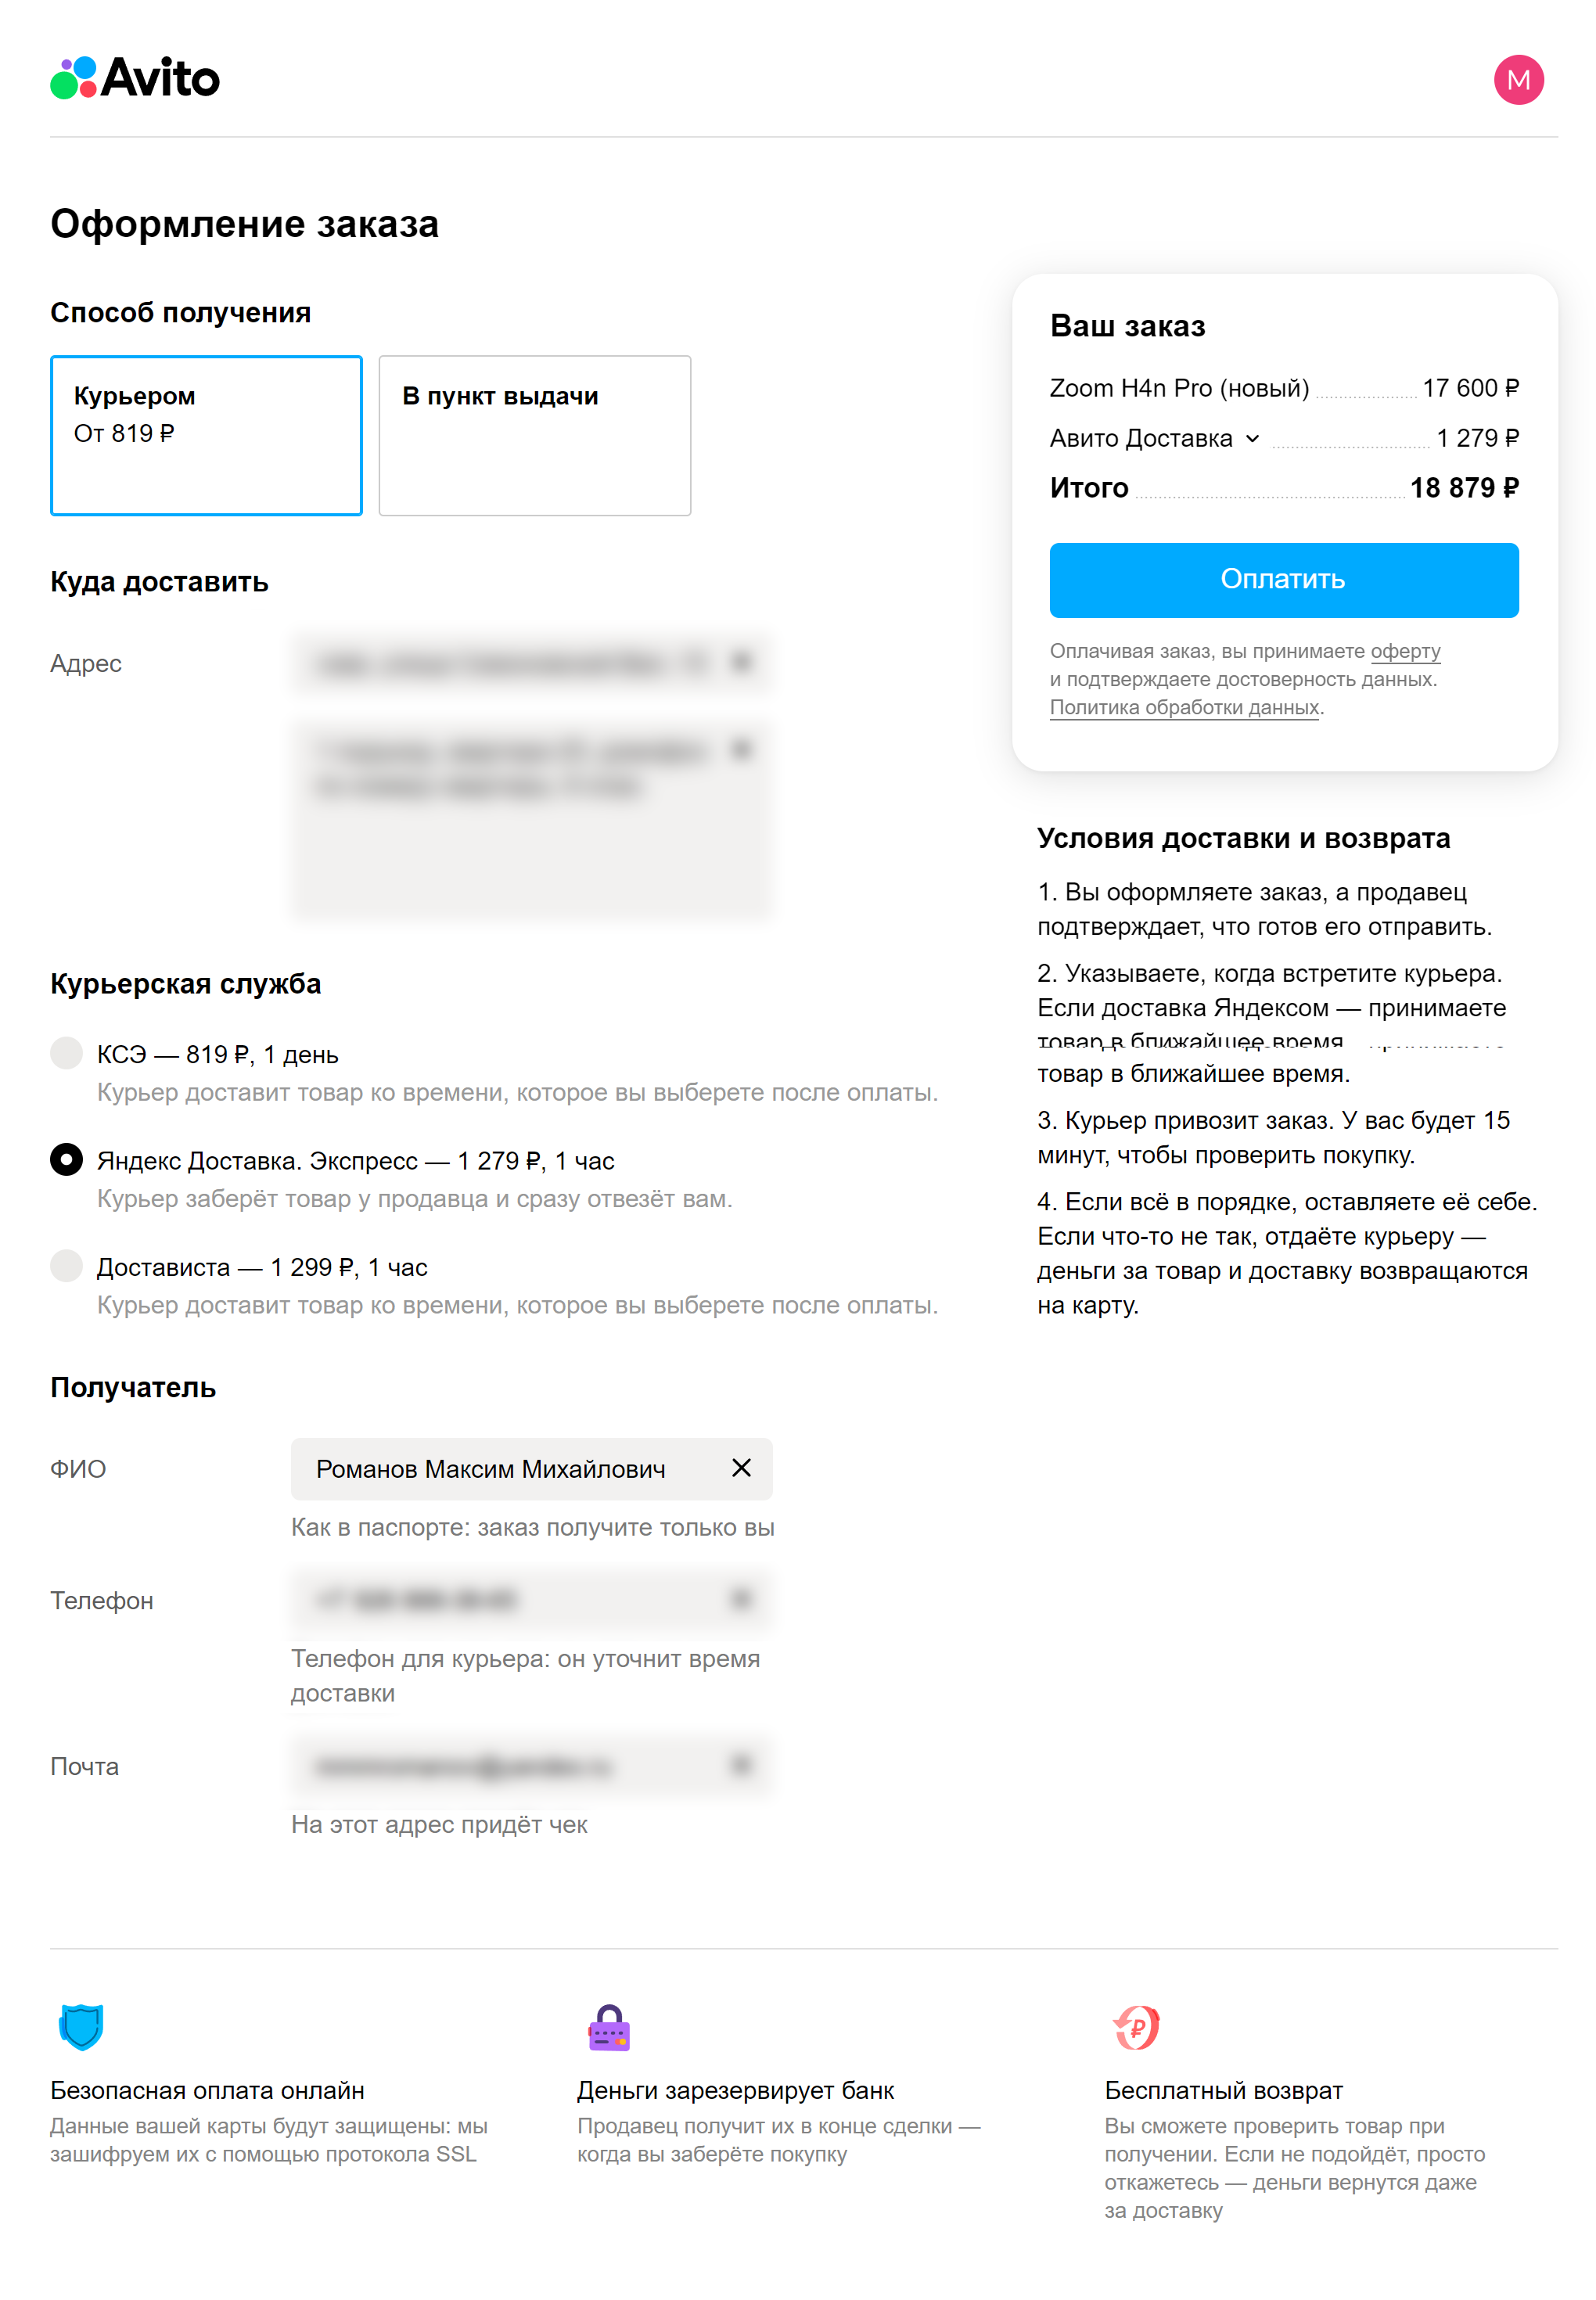 Покупка через «Авито»: онлайн-оплата и получение с помощью «Яндекс.Доставки»  / iXBT.Market / iXBT Live